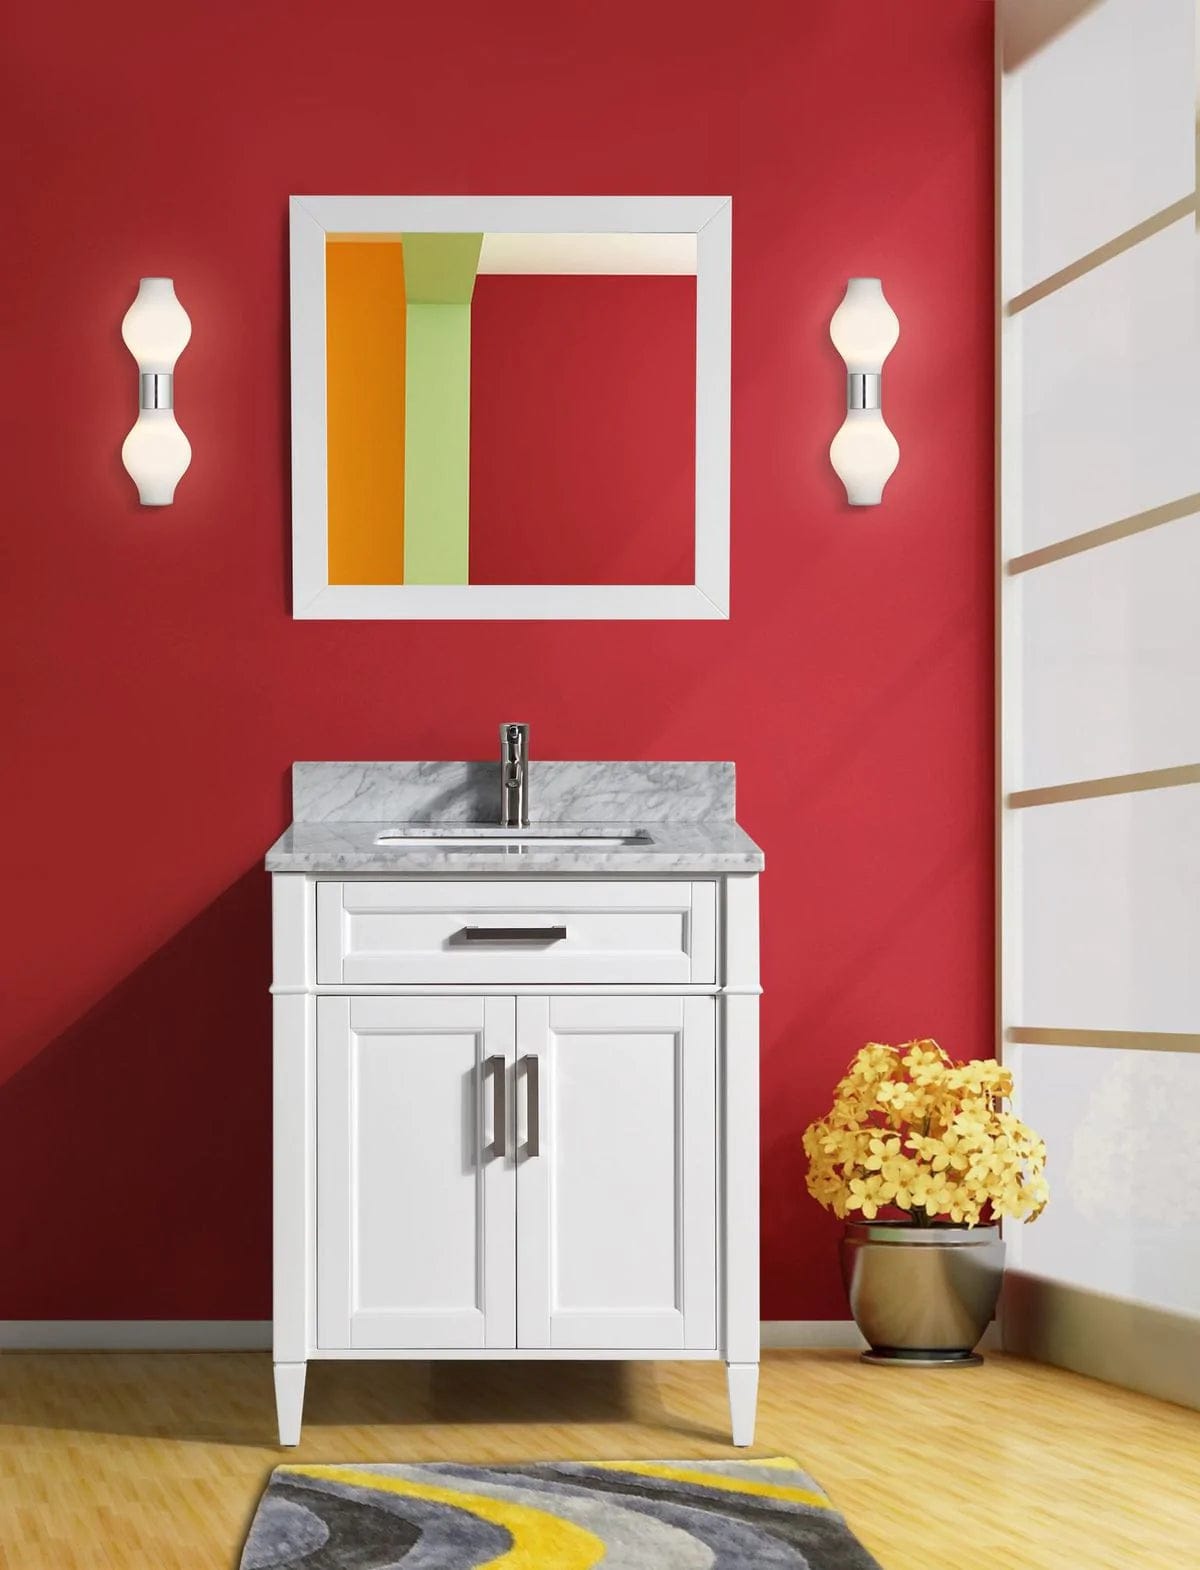 30 in. Single Sink Bathroom Vanity Set in White,Carrara Marble Stone Top - Decohub Home